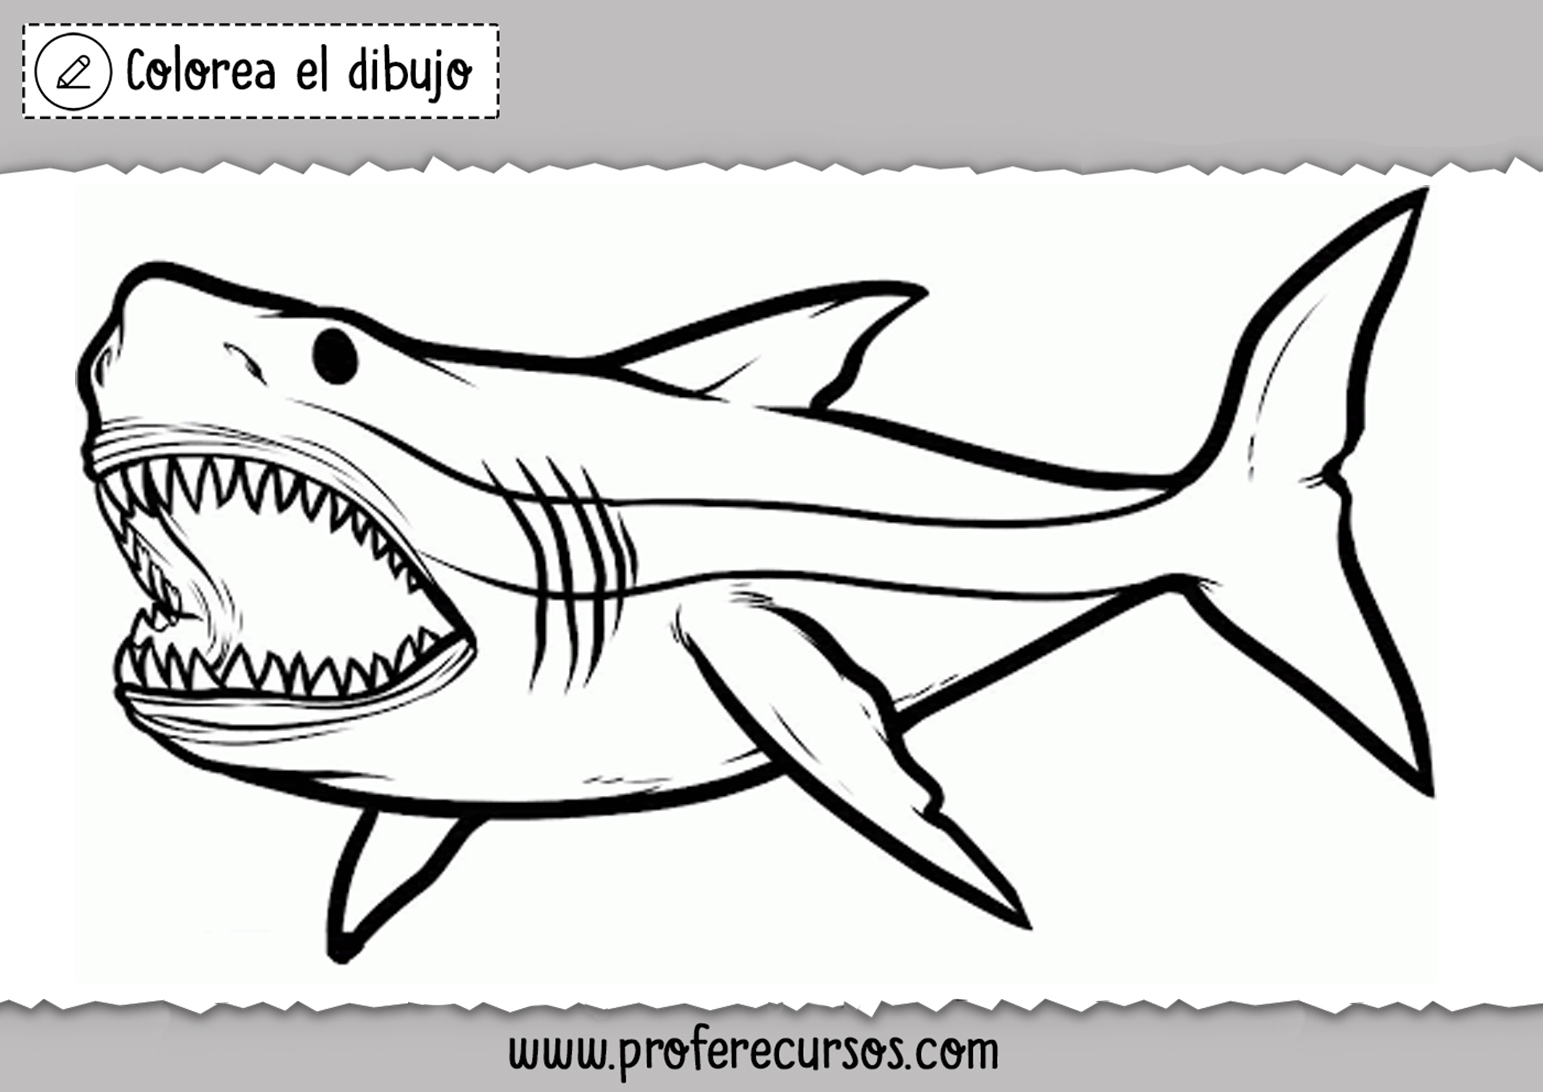 Идеи на тему «Акулы» () в г | большая белая акула, мегалодон, морские чудовища